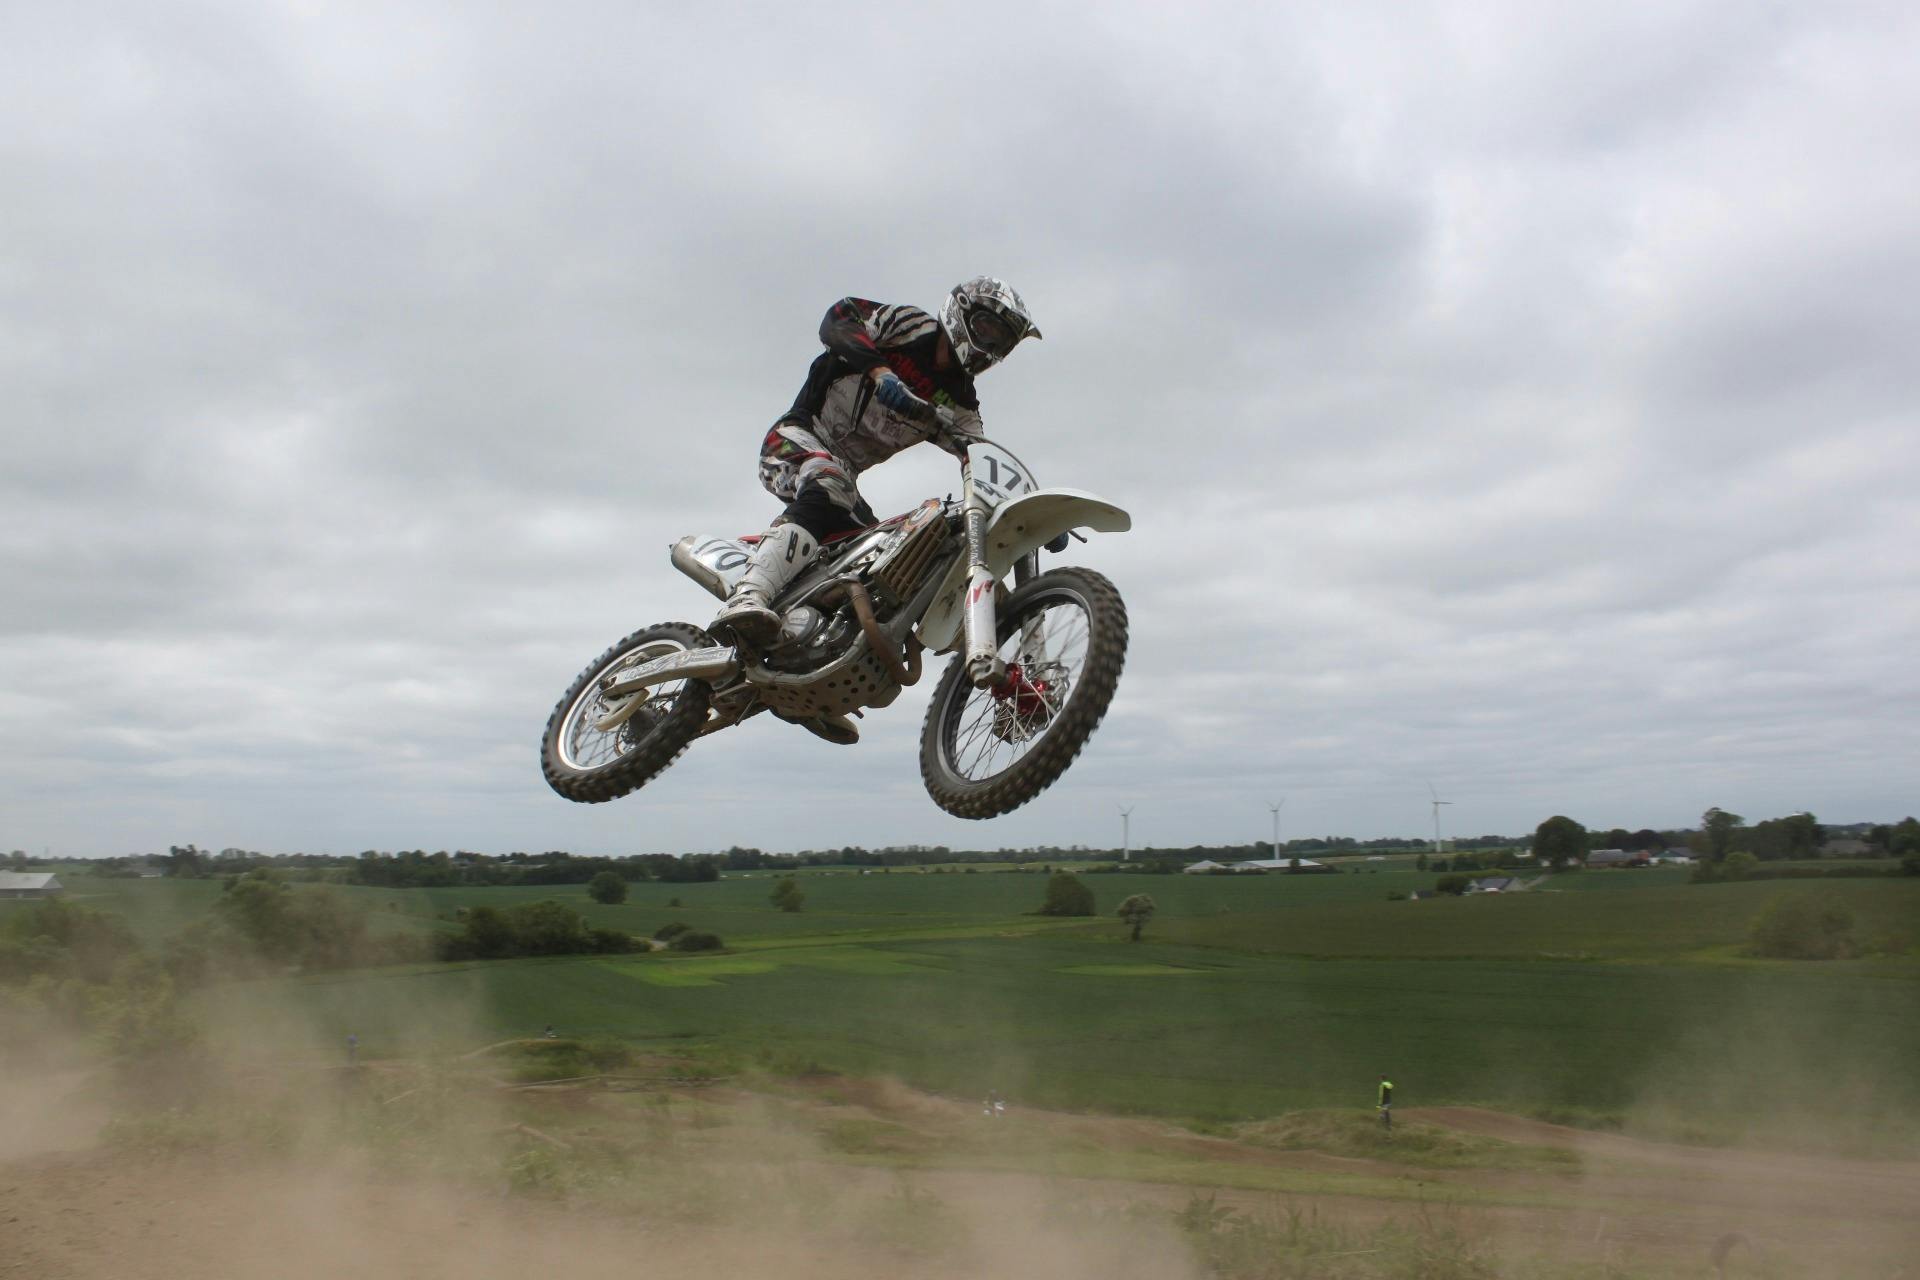 Dando Um Salto De Cada Vez. Uma Fotografia De Um Motocross No Ar Durante  Uma Corrida. Imagem de Stock - Imagem de passatempo, povos: 271731187